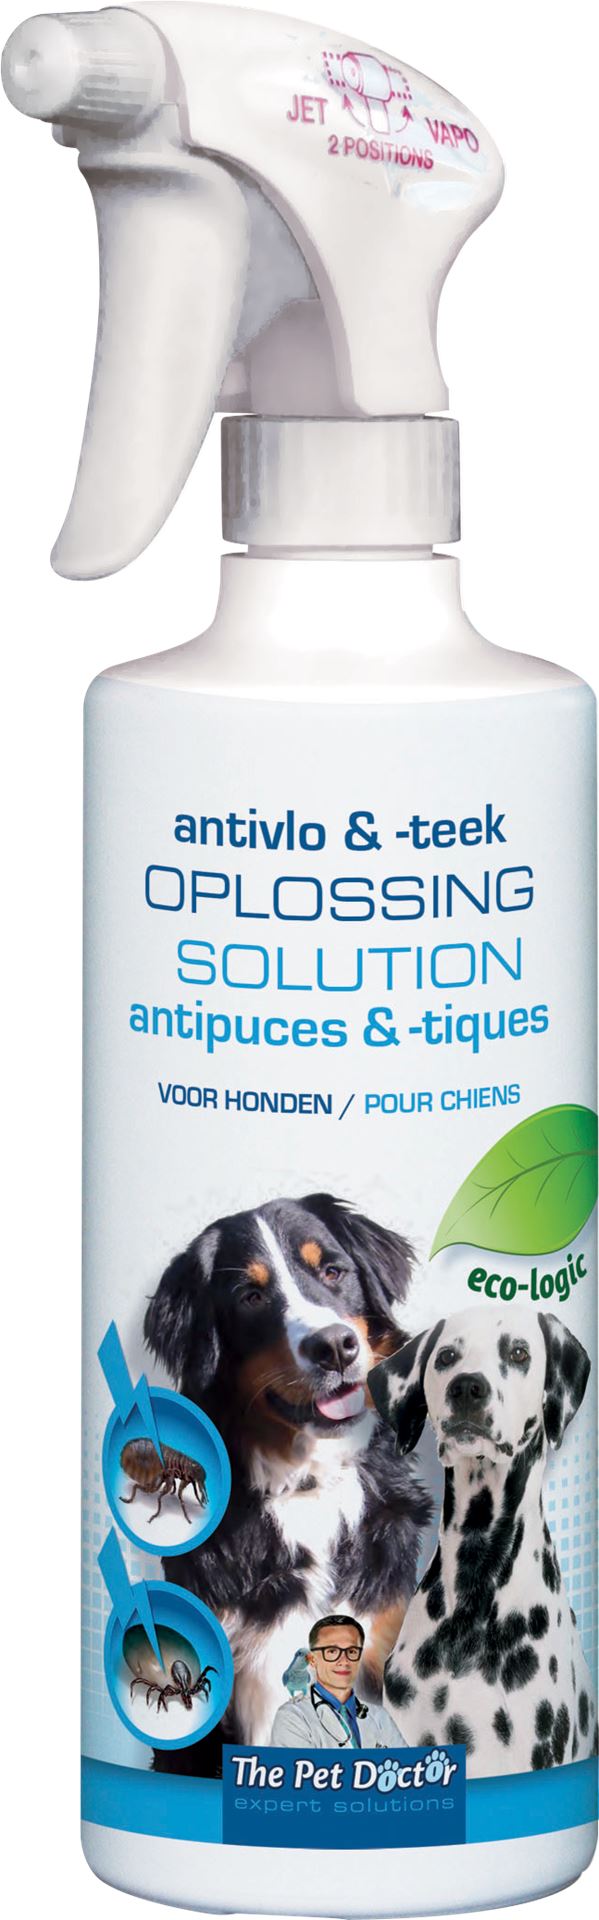 The-Pet-Doctor-Anti-Vlo-Teekoplossing-Hond-500-ml-BE